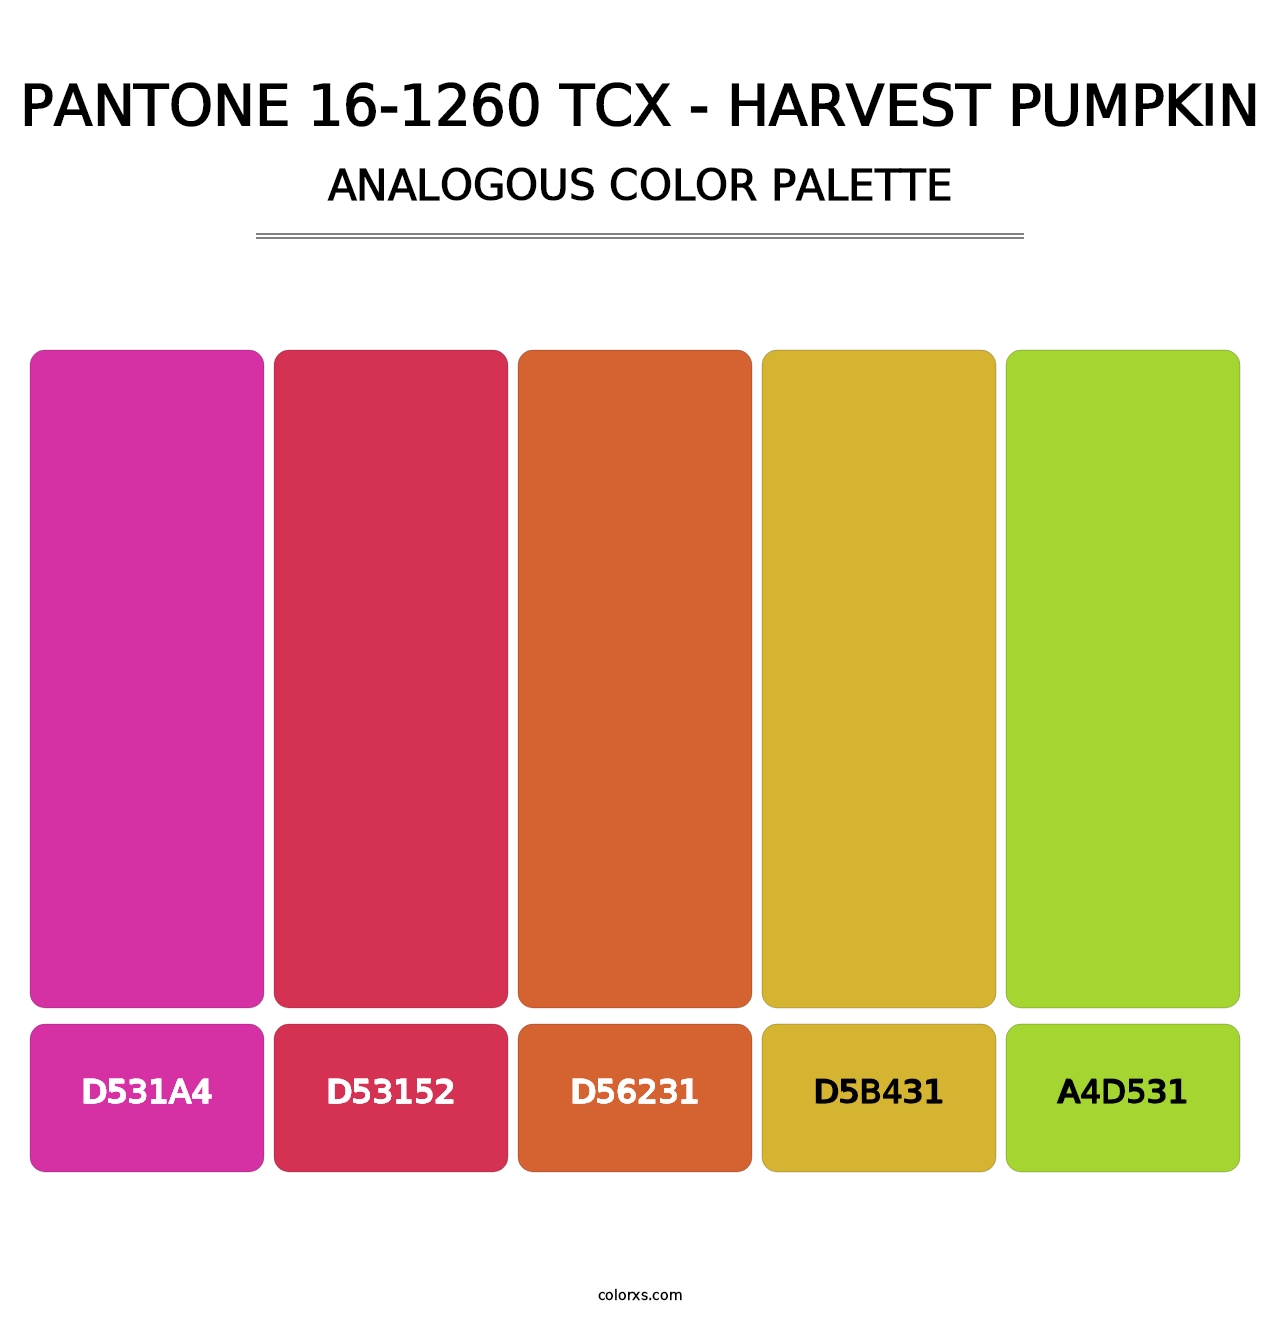 PANTONE 16-1260 TCX - Harvest Pumpkin - Analogous Color Palette